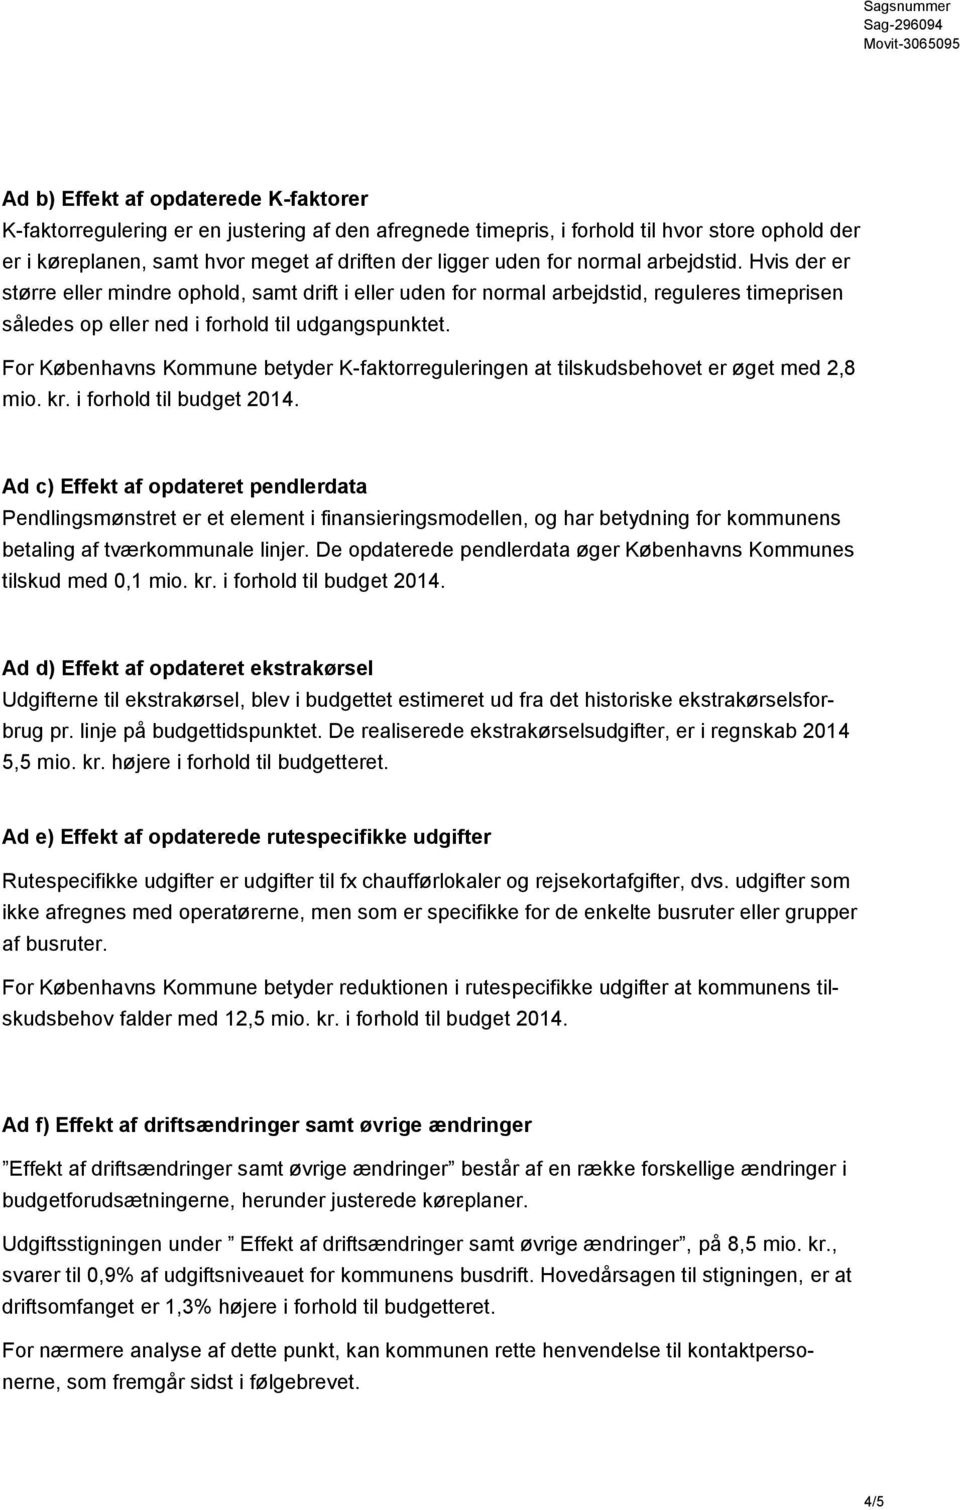 For Københavns Kommune betyder K-faktorreguleringen at tilskudsbehovet er øget med 2,8 mio. kr. i forhold til budget 2014.